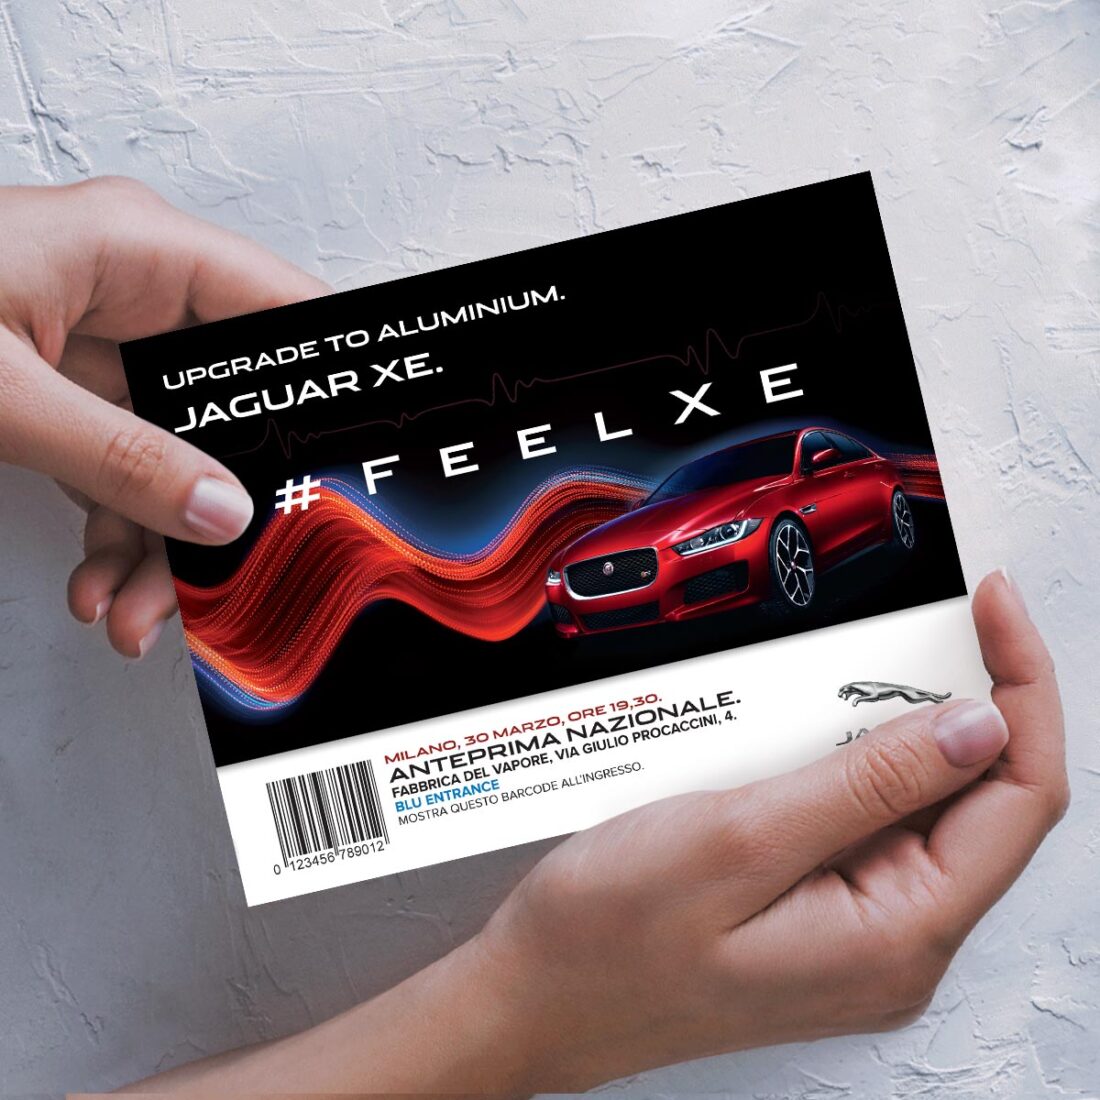 Invito all'anteprima nazionale della Jaguar XE